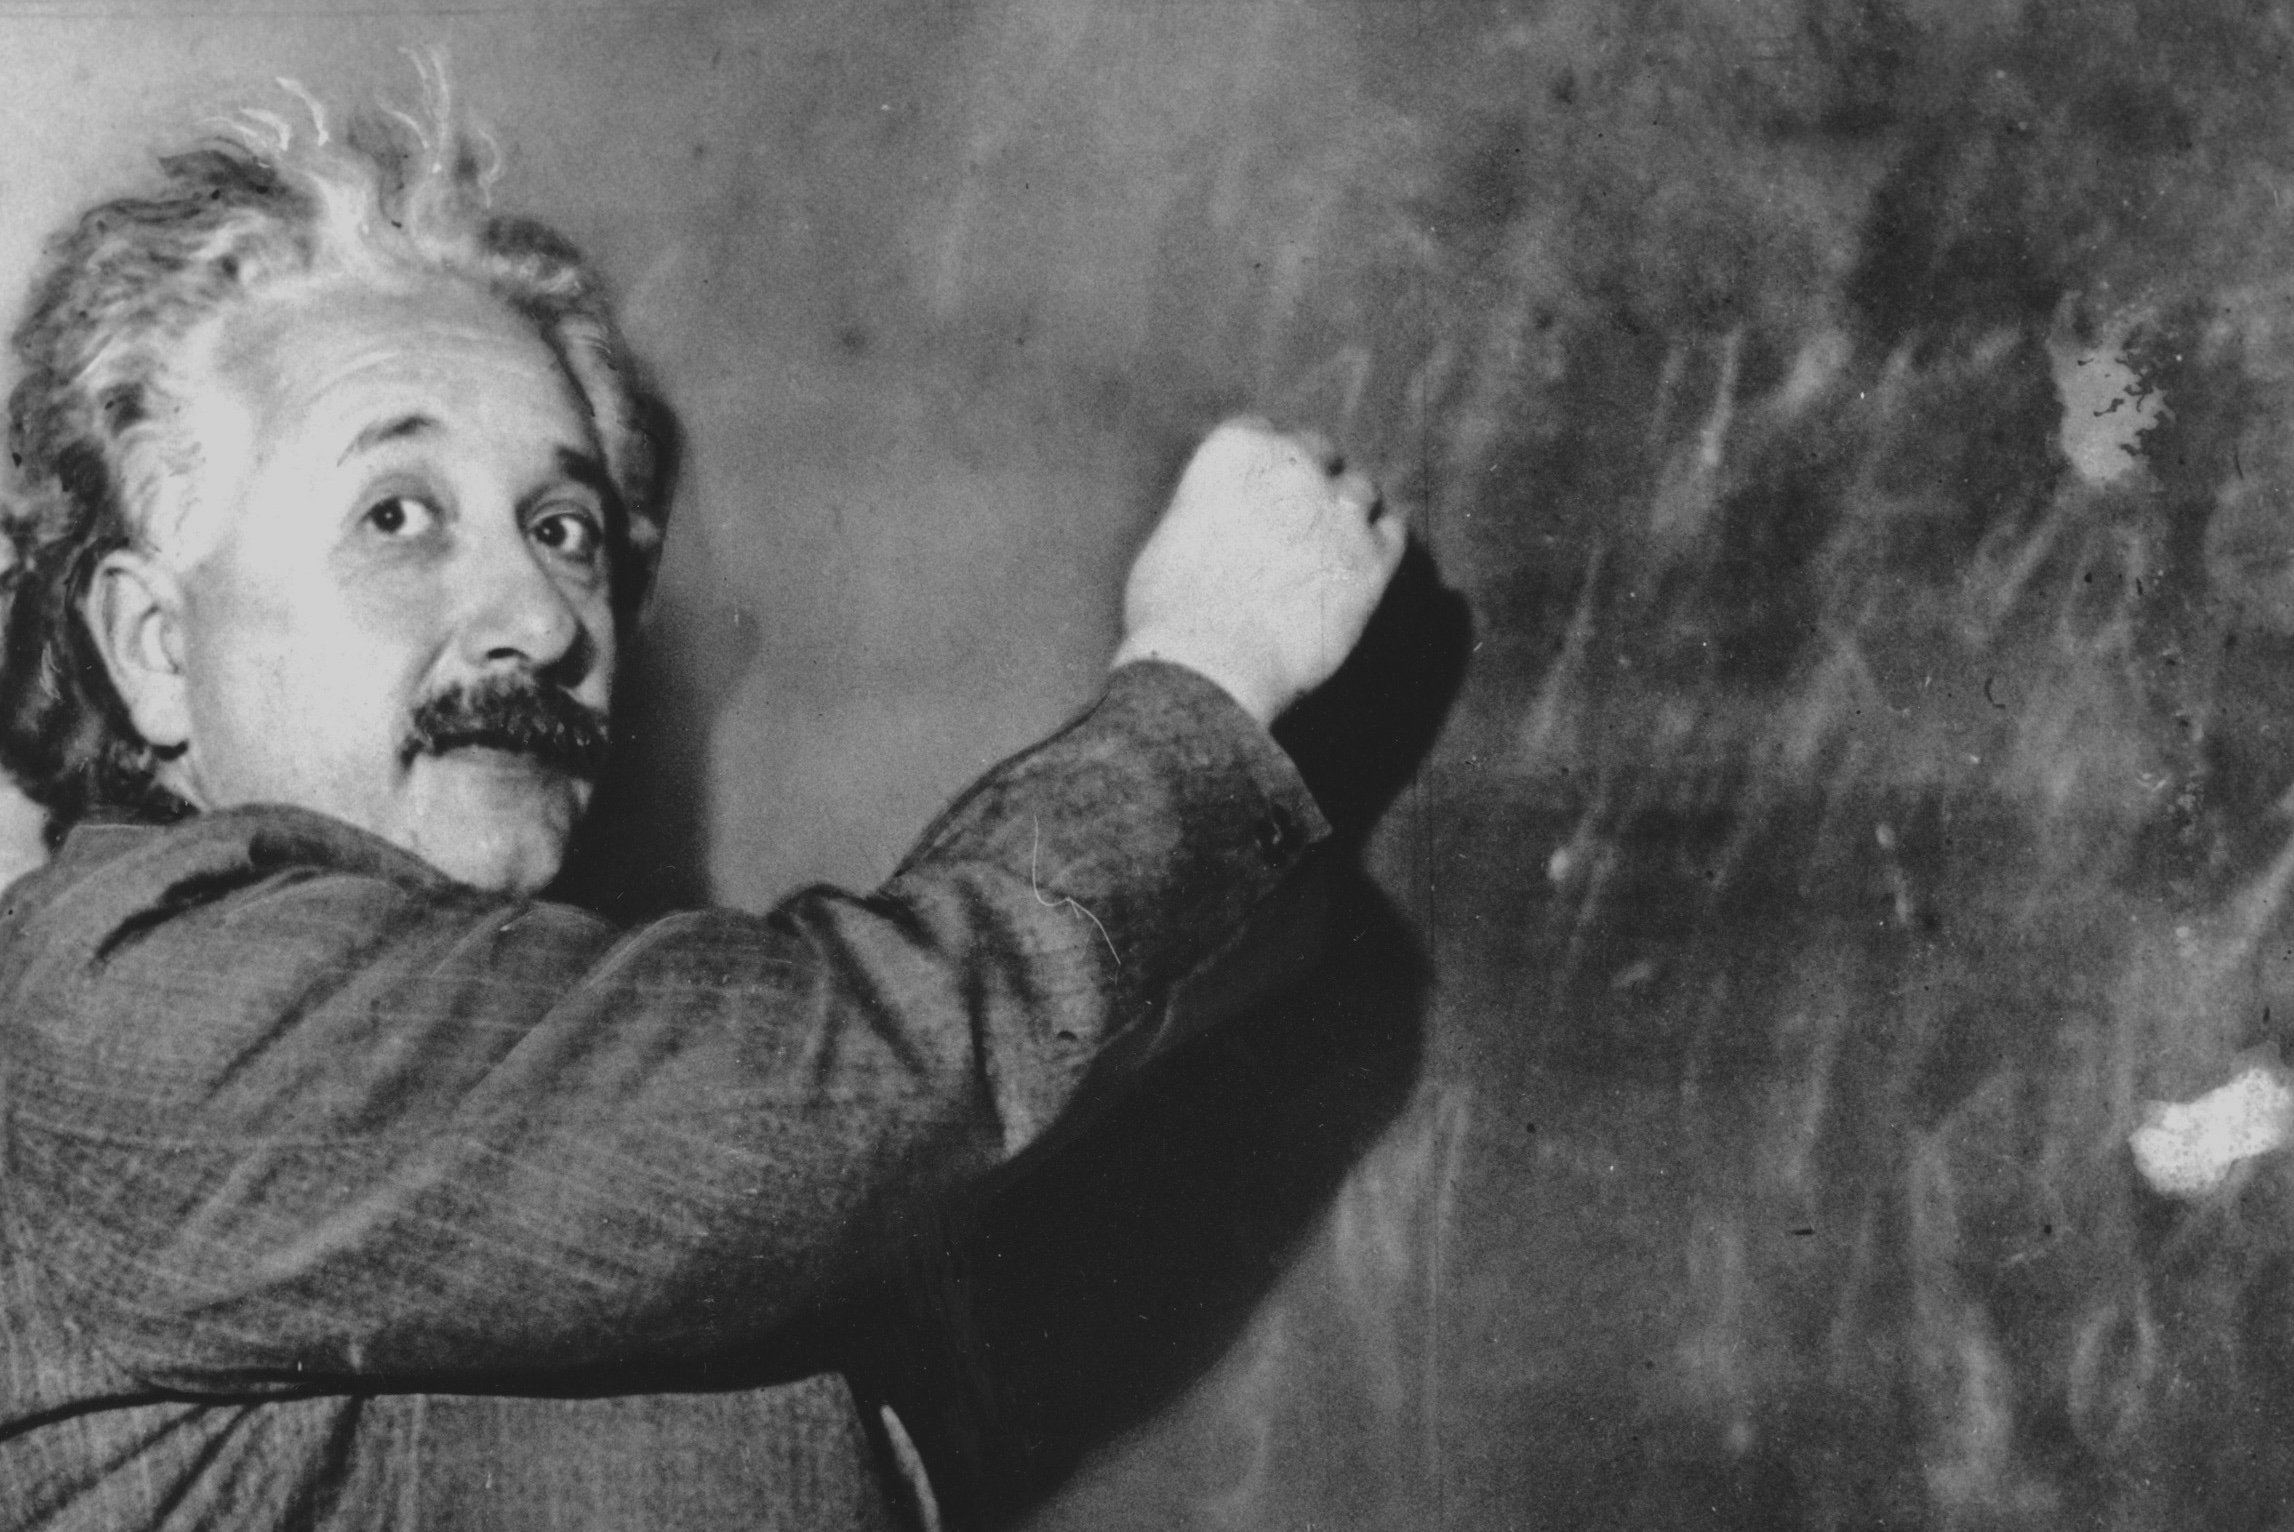 Albert Einstein writes on a blackboard